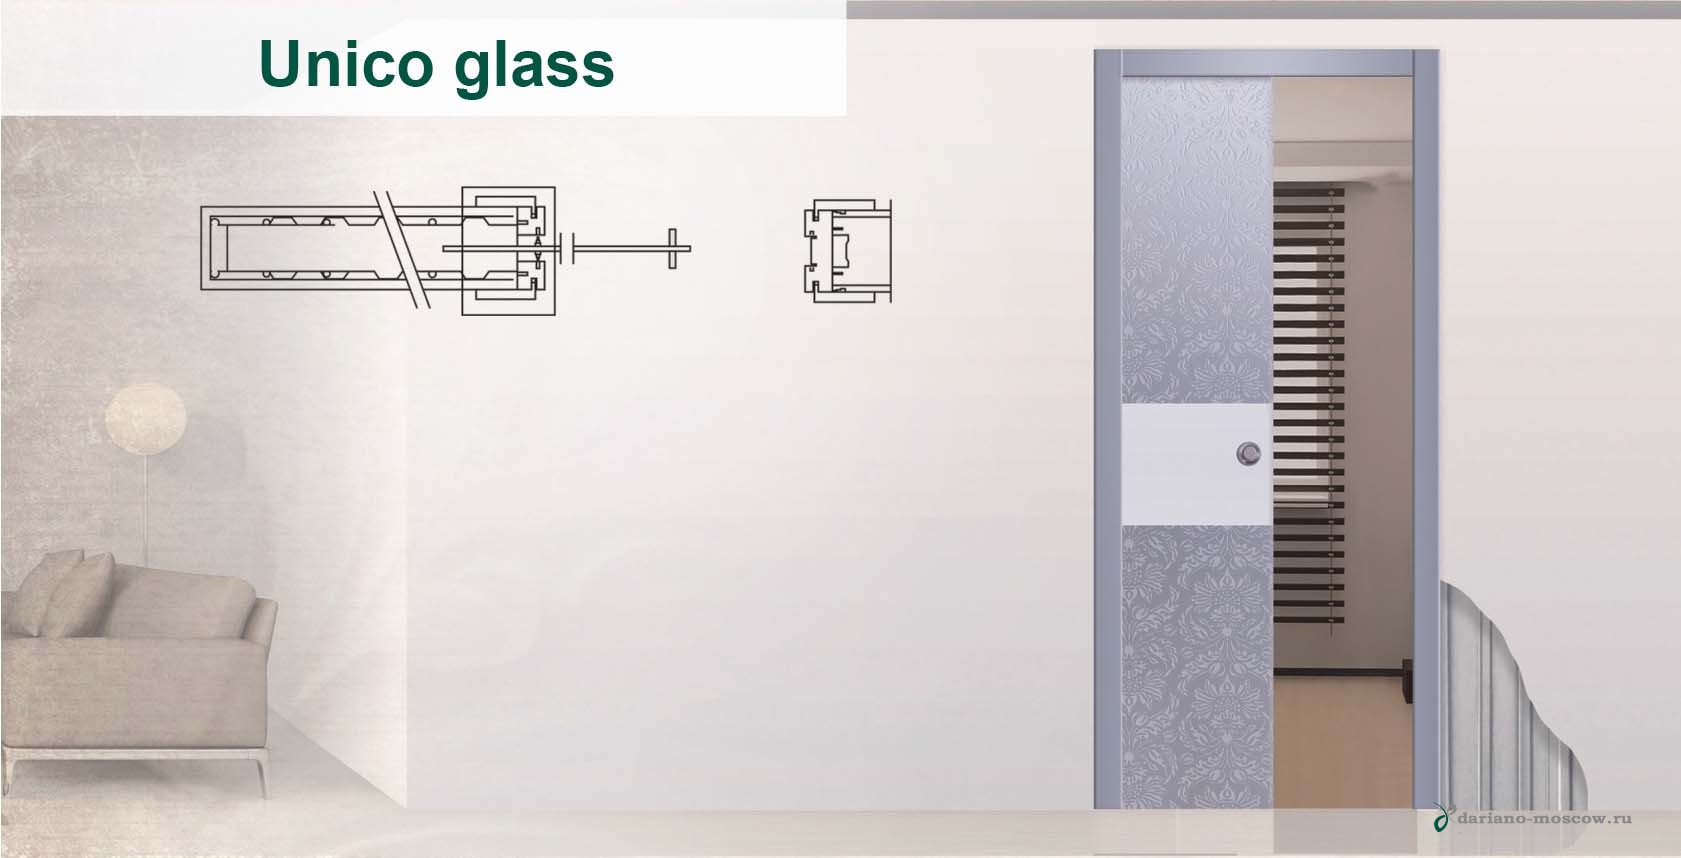 Пенал Unico - состоит из металлического пенала для одной деревянной двери из стекла.